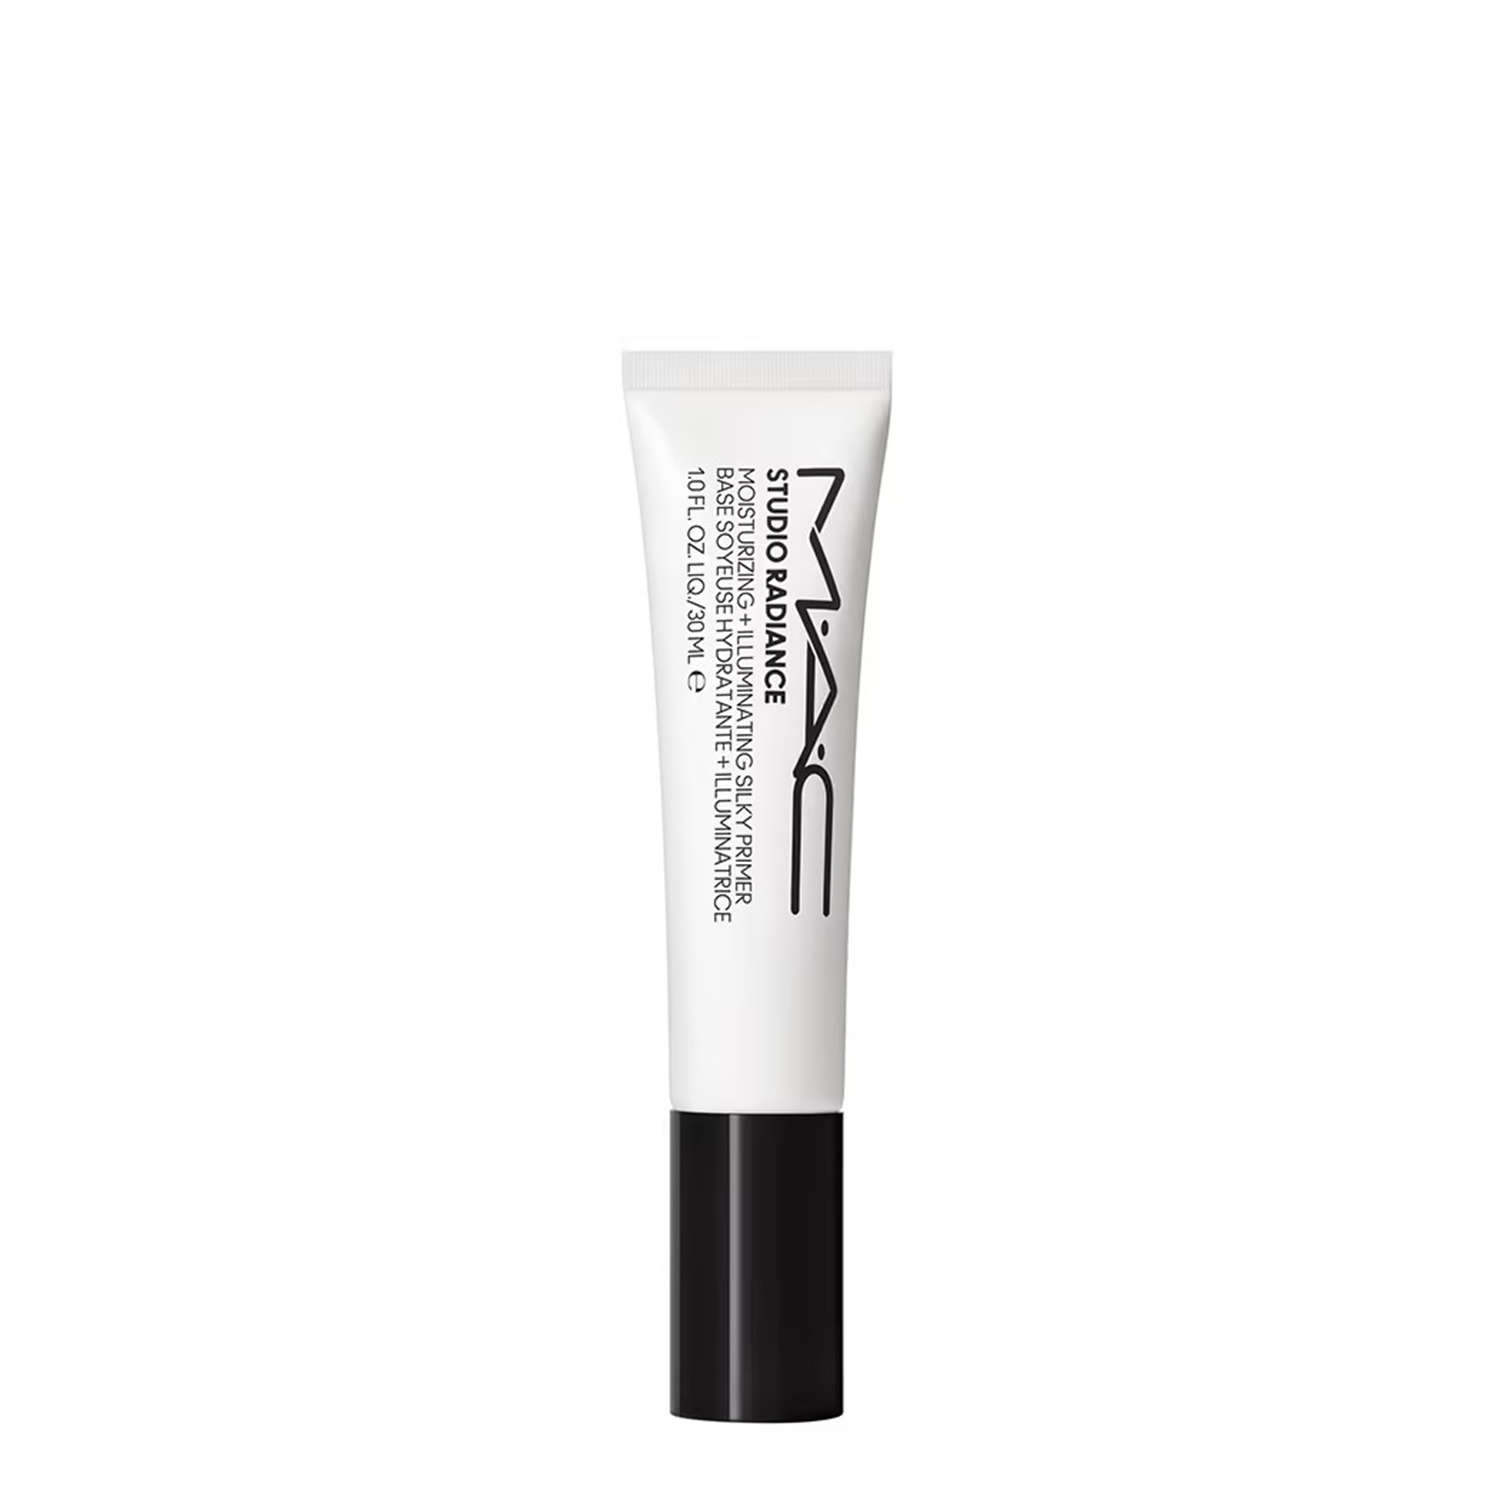 Prep + Prime Pore Refiner Stick - Pore Minimizer, MAC Cosmetics